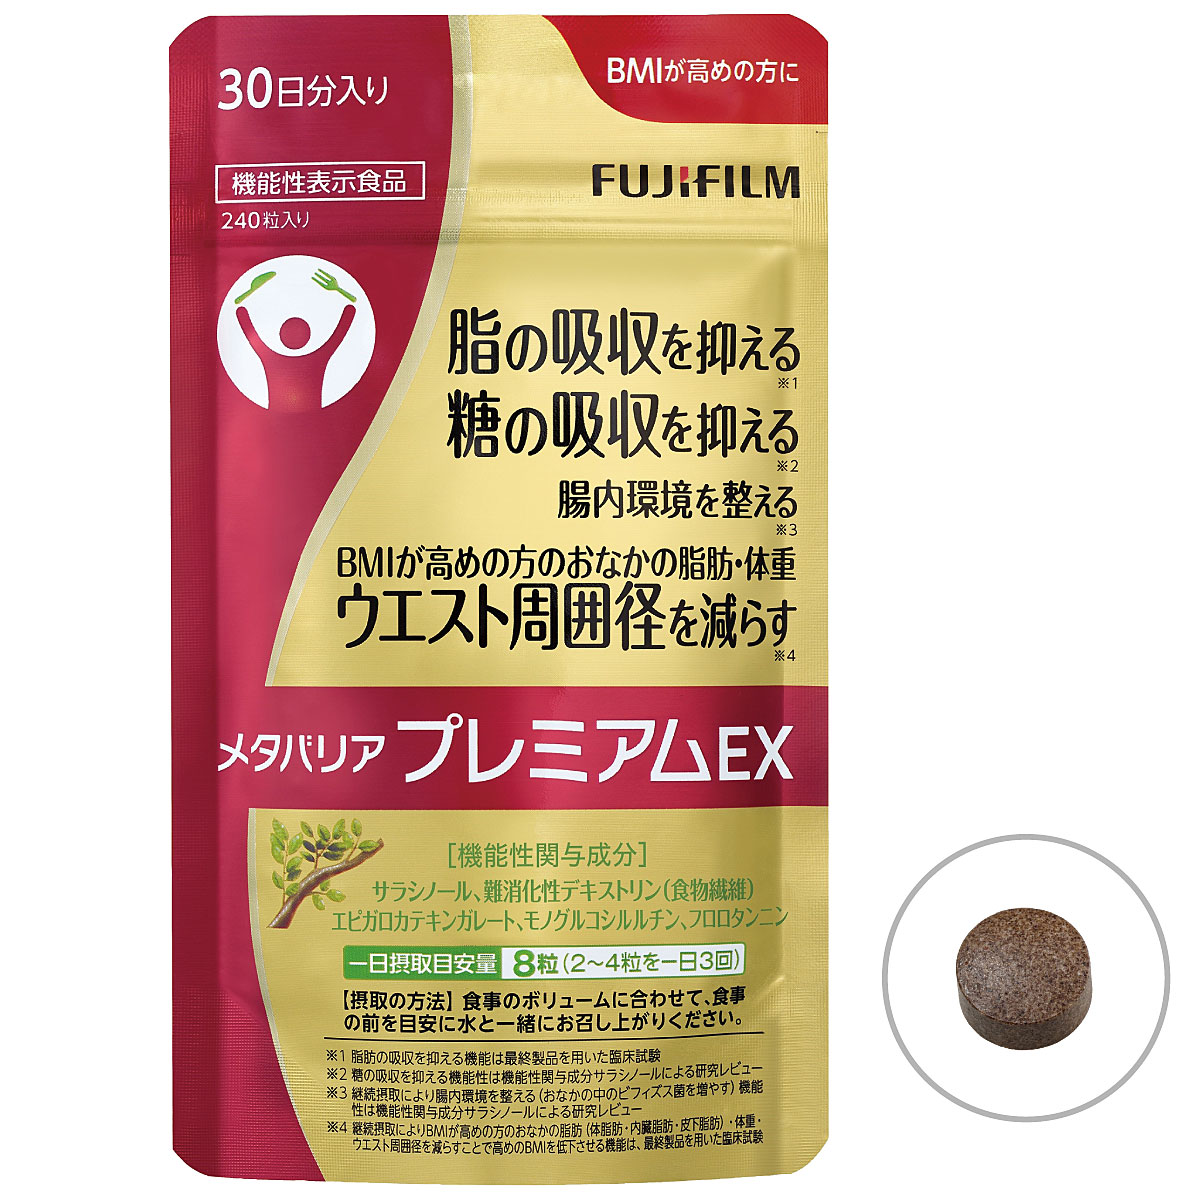 富士フイルム メタバリアプレミアムEX - 美容・健康商品の通販なら